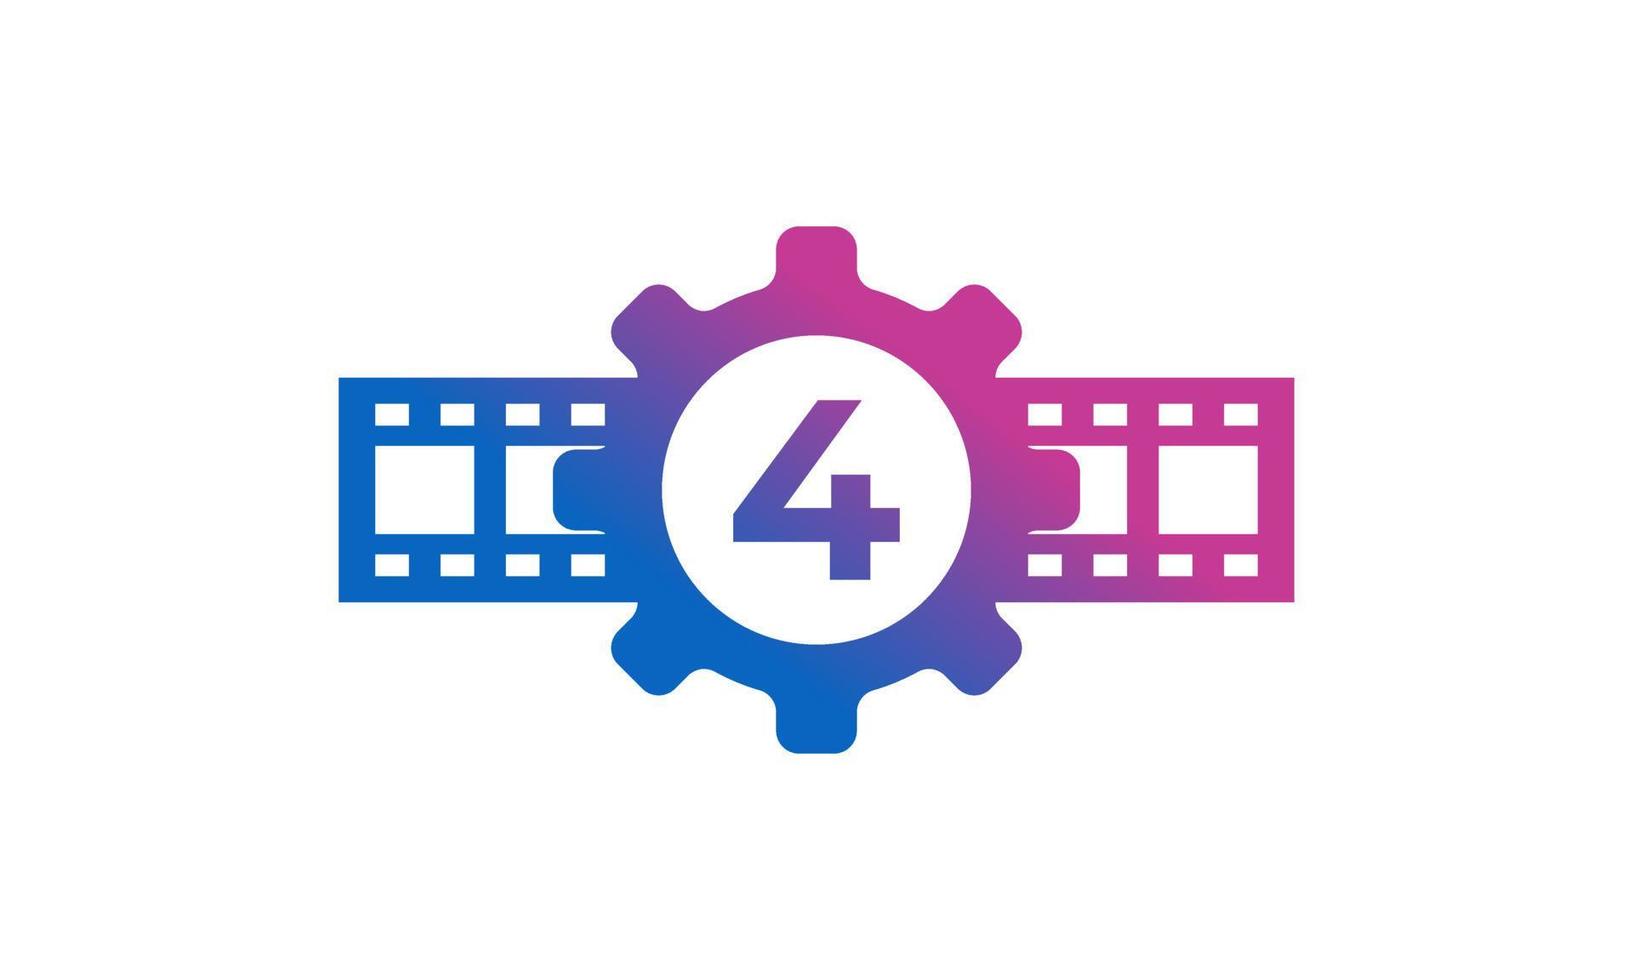 Zahnrad Nummer 4 mit Rollenstreifen Filmstreifen für Inspiration für das Logo des Filmkino-Produktionsstudios vektor